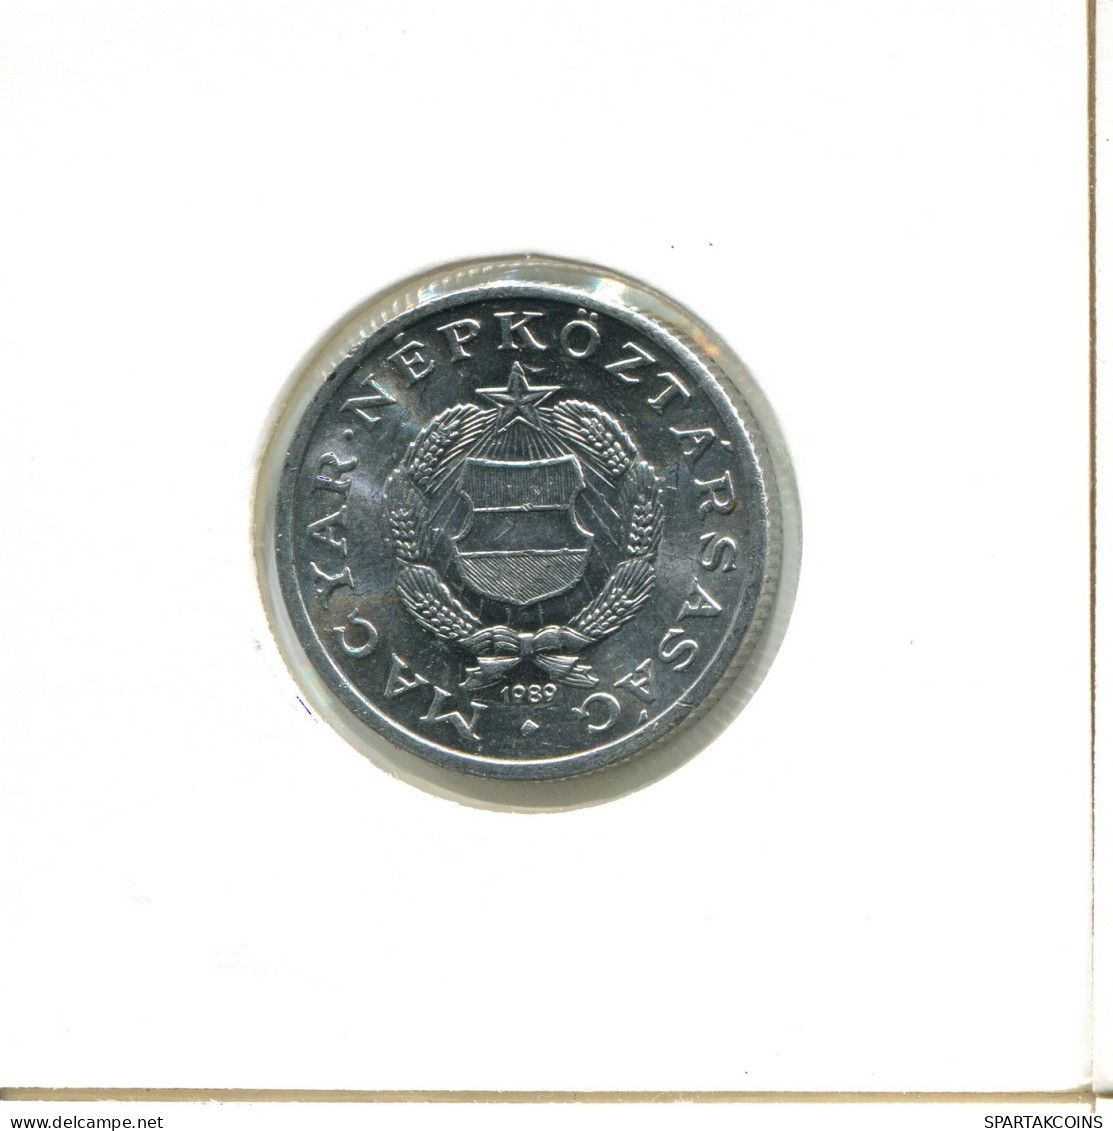 1 FORINT 1989 HUNGRÍA HUNGARY Moneda #AX740.E.A - Hongrie